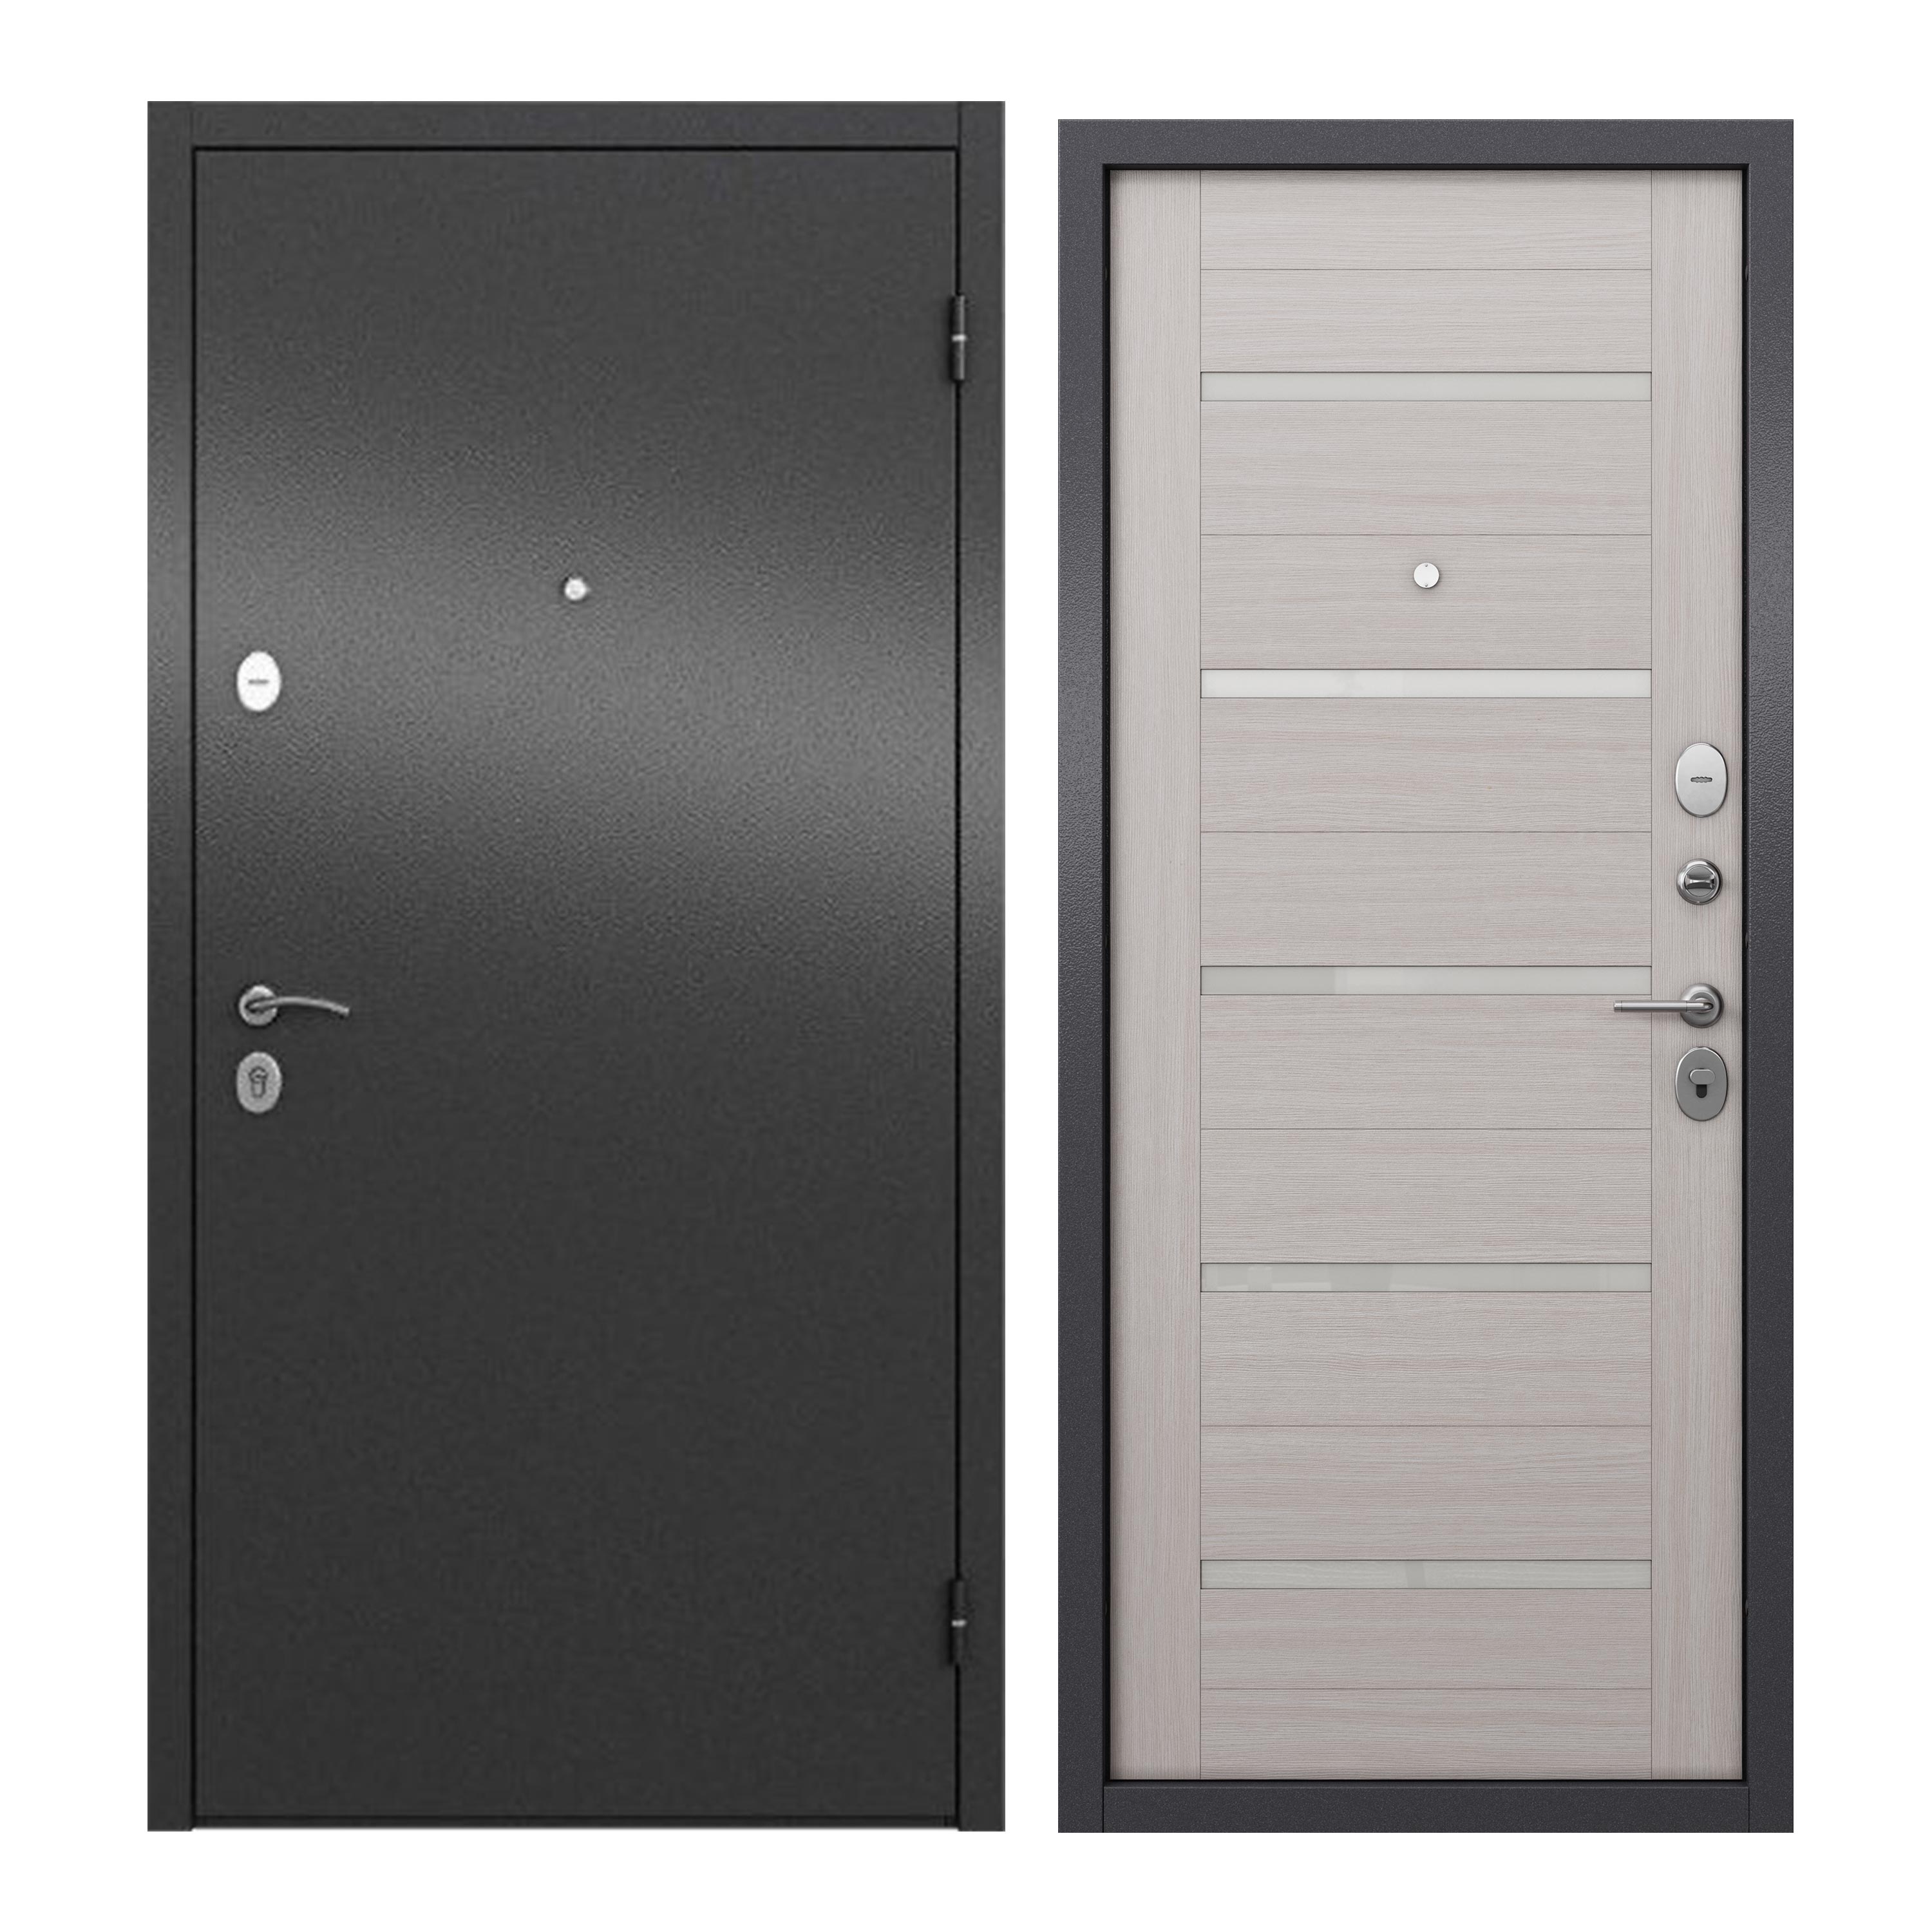 Дверь входная для квартиры ProLine металлическая Apartment X 960х2050, правая, серый